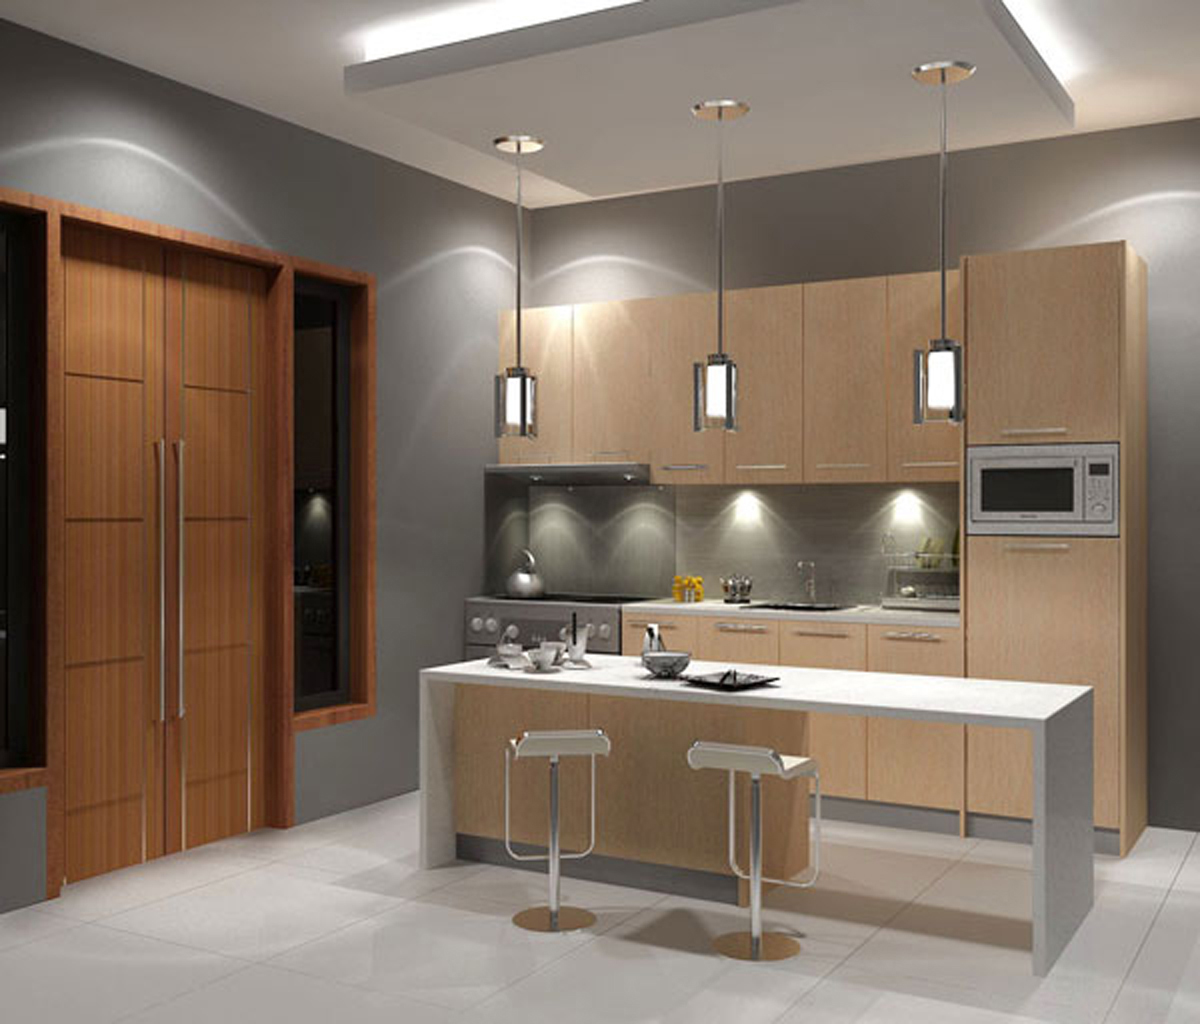 Designs Ruang Dapur  Untuk Rumah Minimalis  Modern  2013